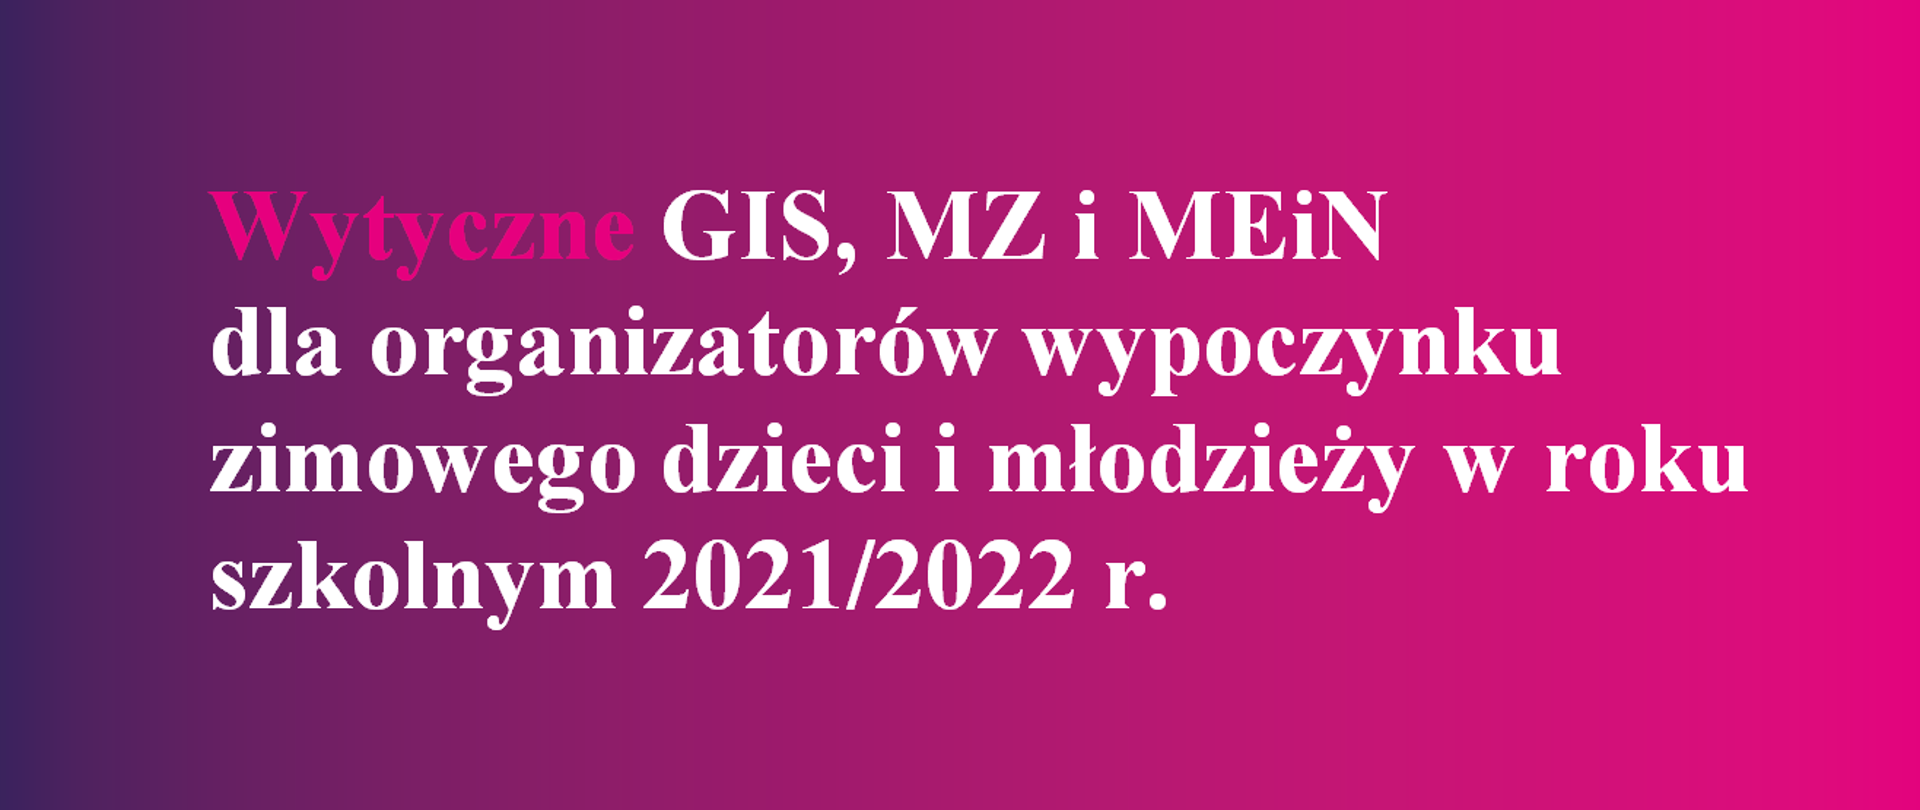 Wytyczne GIS, MZ i MEiN dla organizatorów wypoczynku zimowego dzieci i młodzieży w roku szkolnym 2021/2022 r.